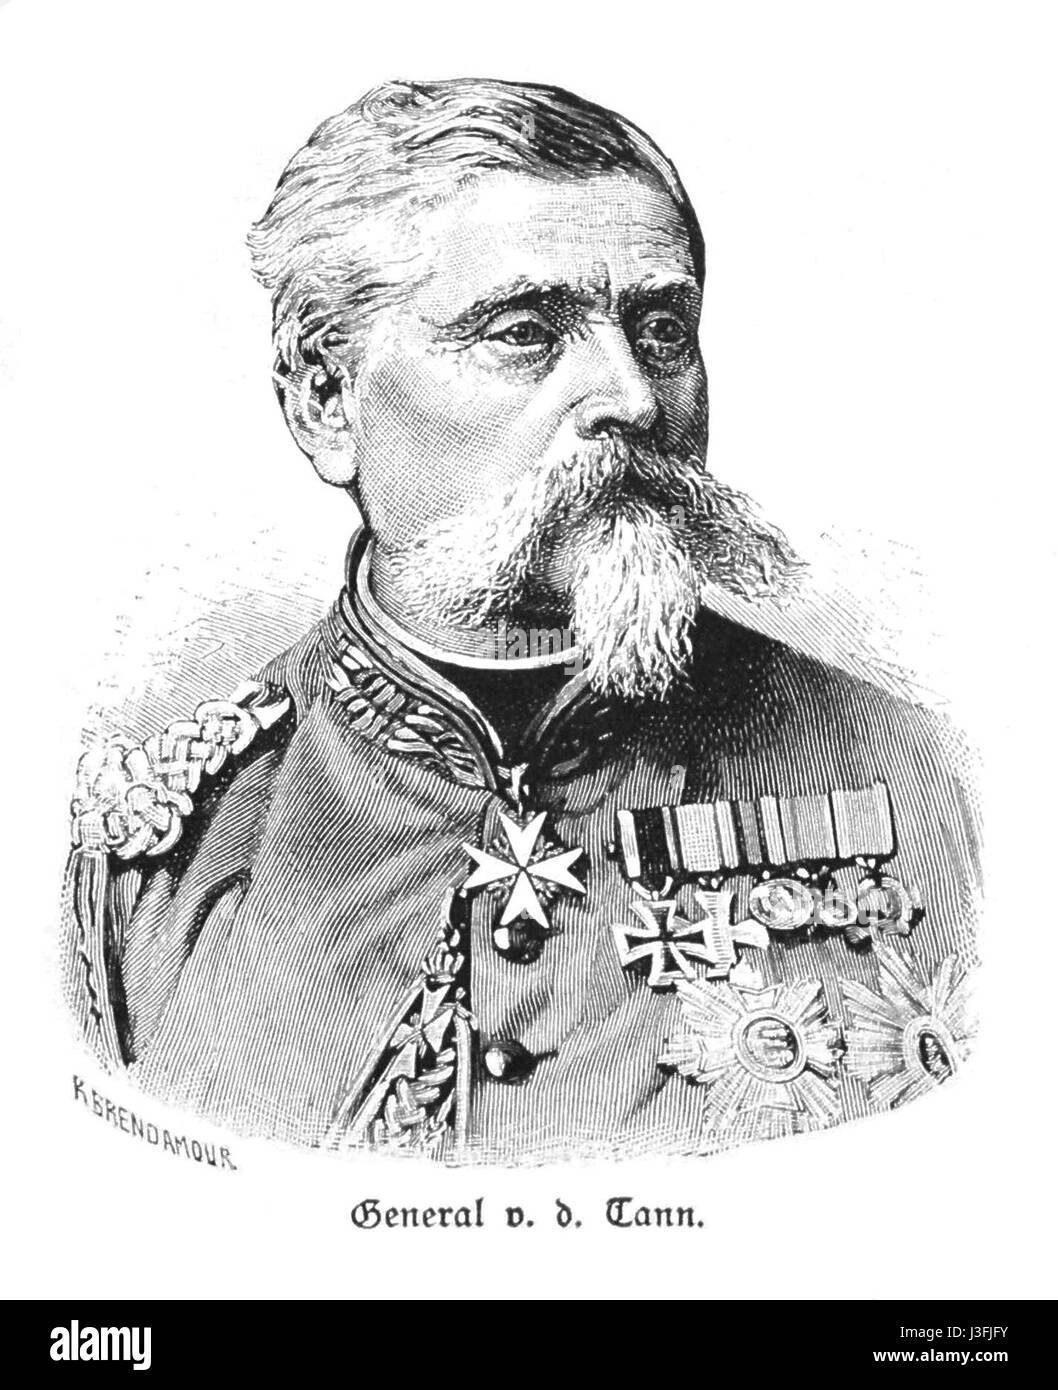 General von der Tann Stock Photo - Alamy